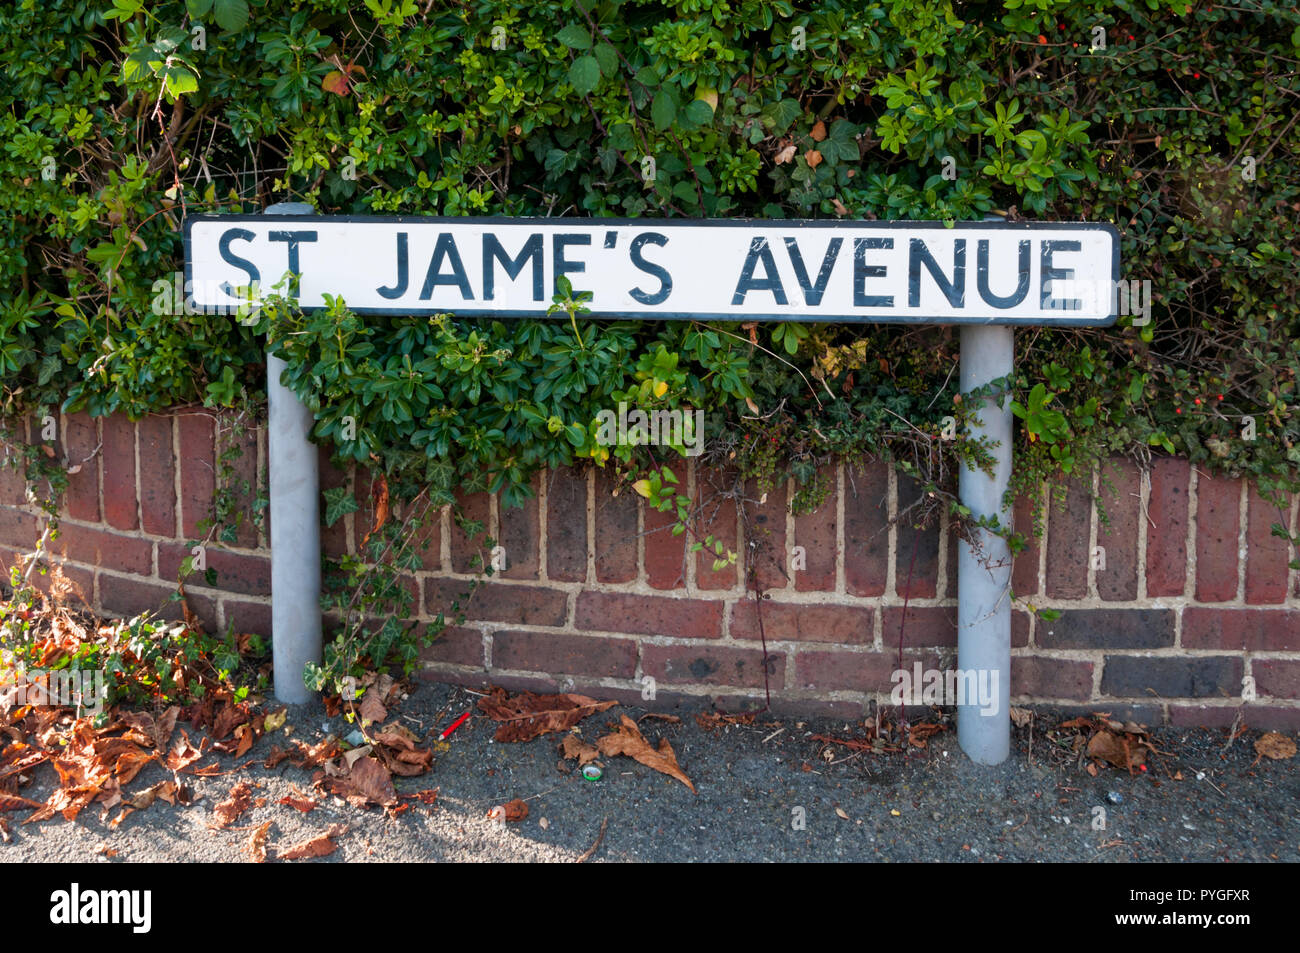 Straßennamen Zeichen liest St. Jame's Avenue, mit einem falsch gesetzte Apostrophe. Stockfoto